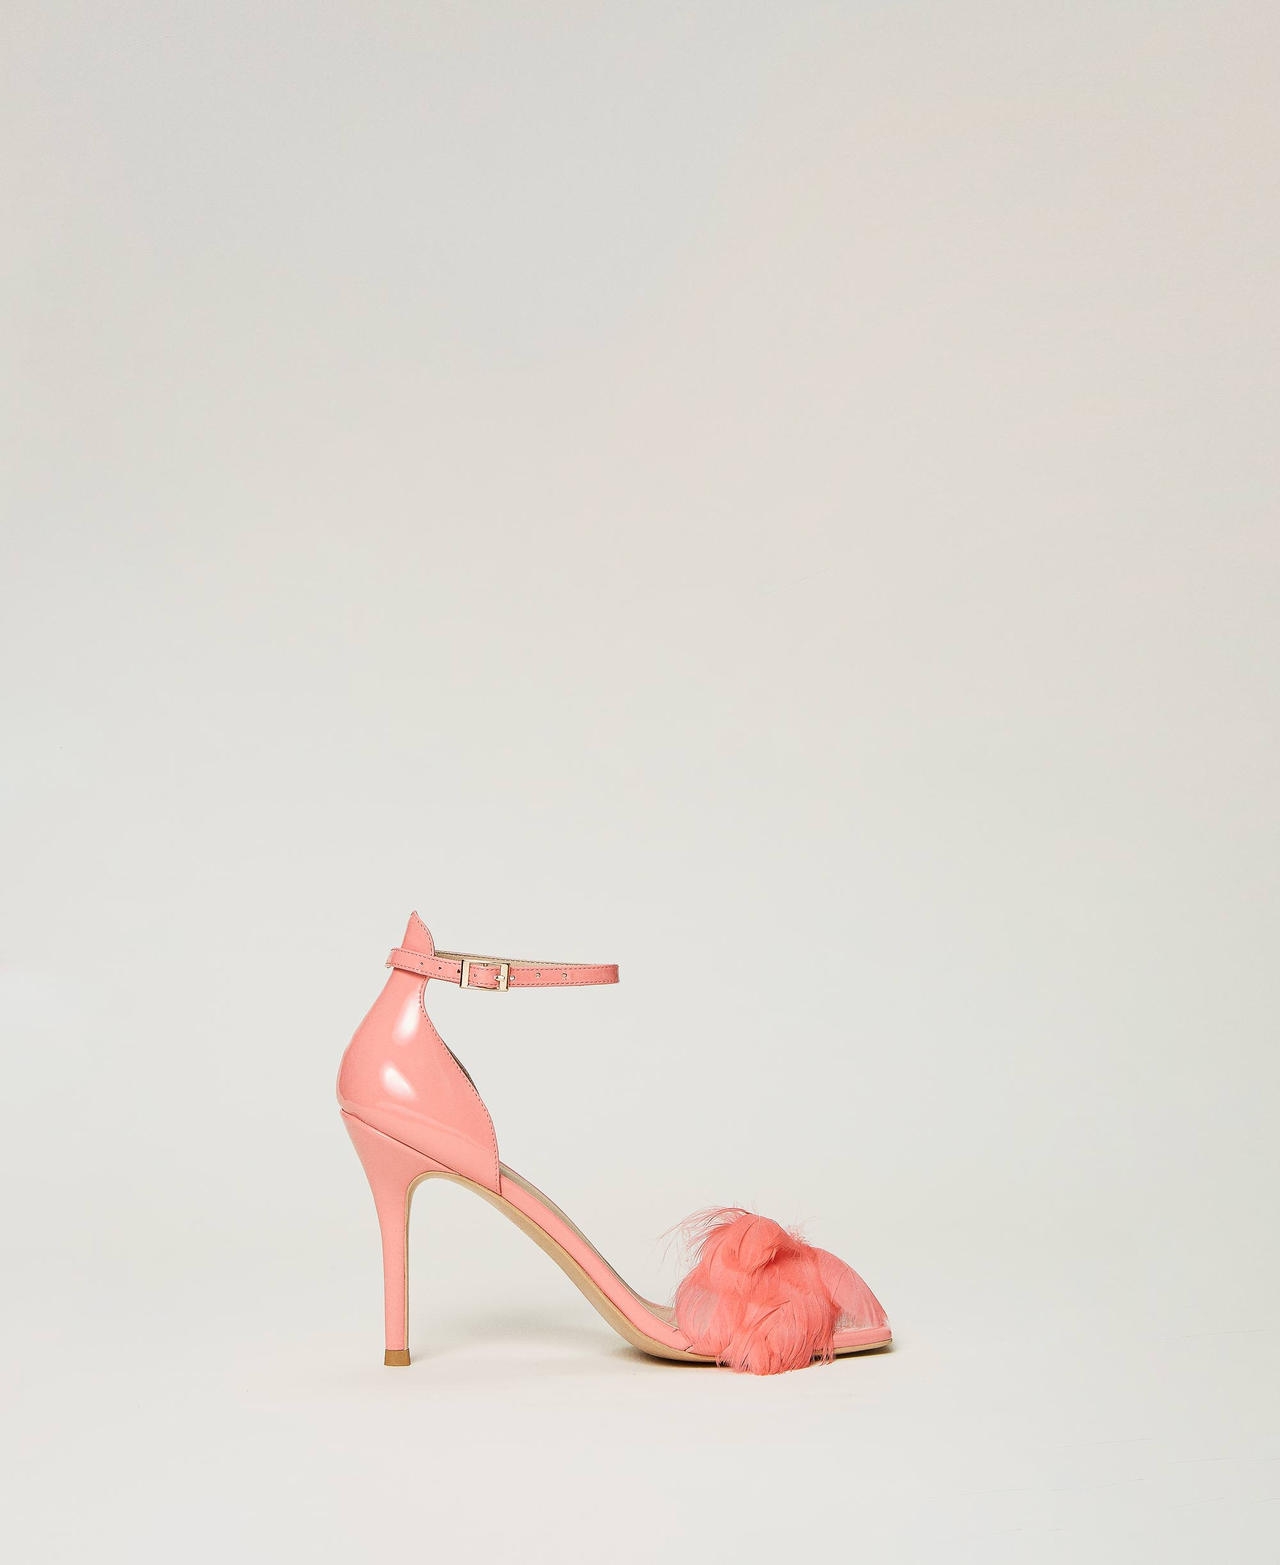 twinset scarpe - sandali in vernice con piume, rosa tropical pink, taglia: 35 donna